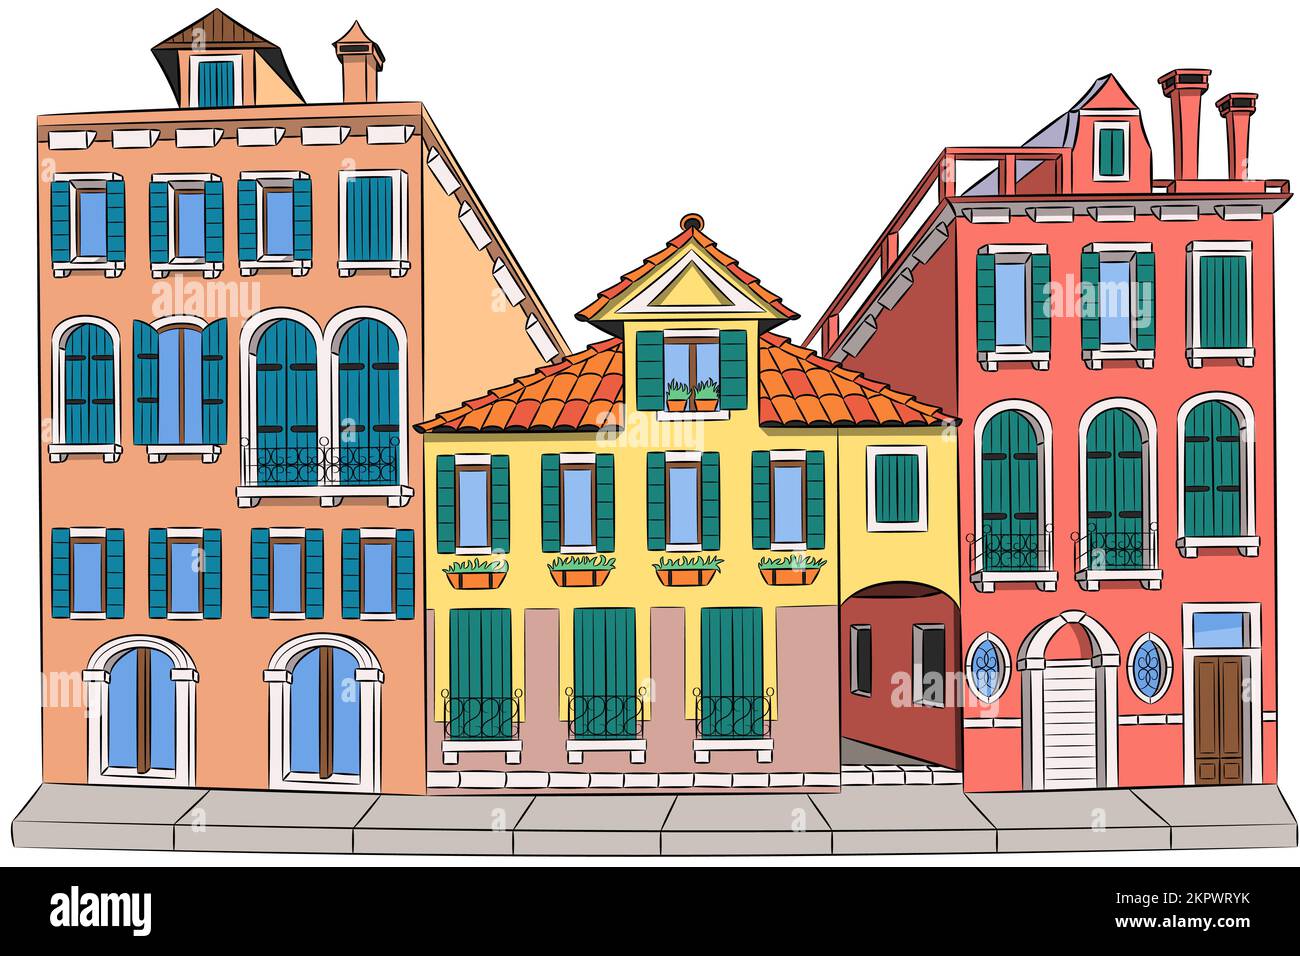 Facciate multicolore di vecchie case medievali tradizionali colorate isolate su sfondo bianco. Venezia. Italia. Illustrazione vettoriale. Illustrazione Vettoriale